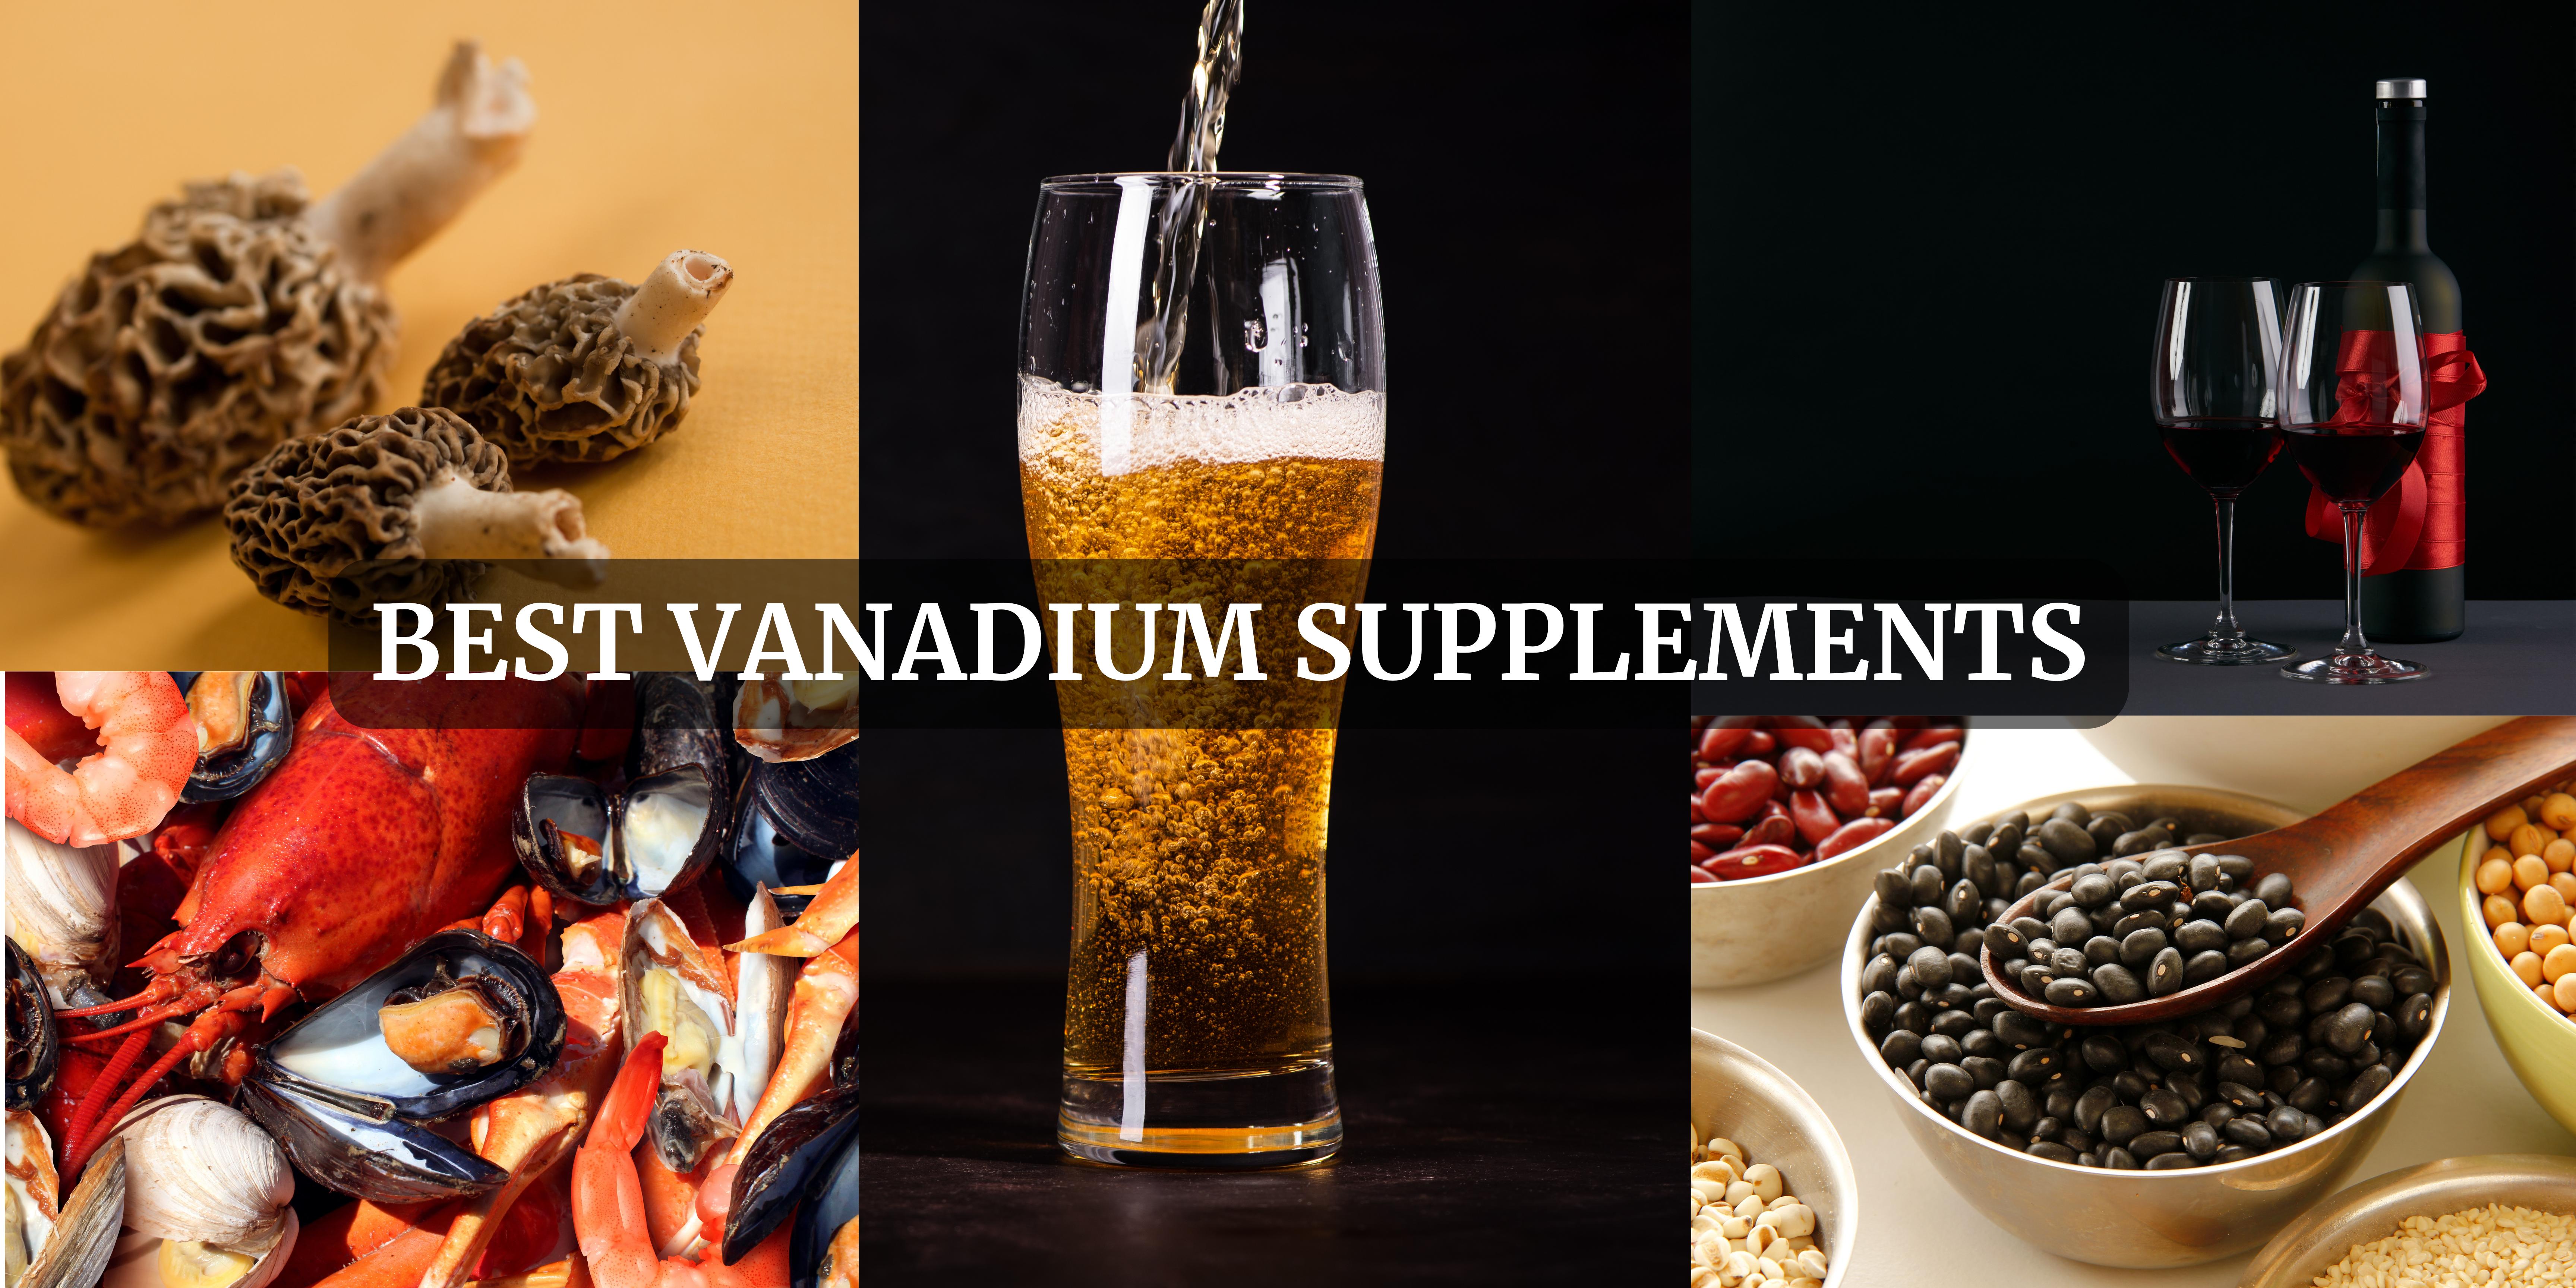 Vanadium Supplements in Australia